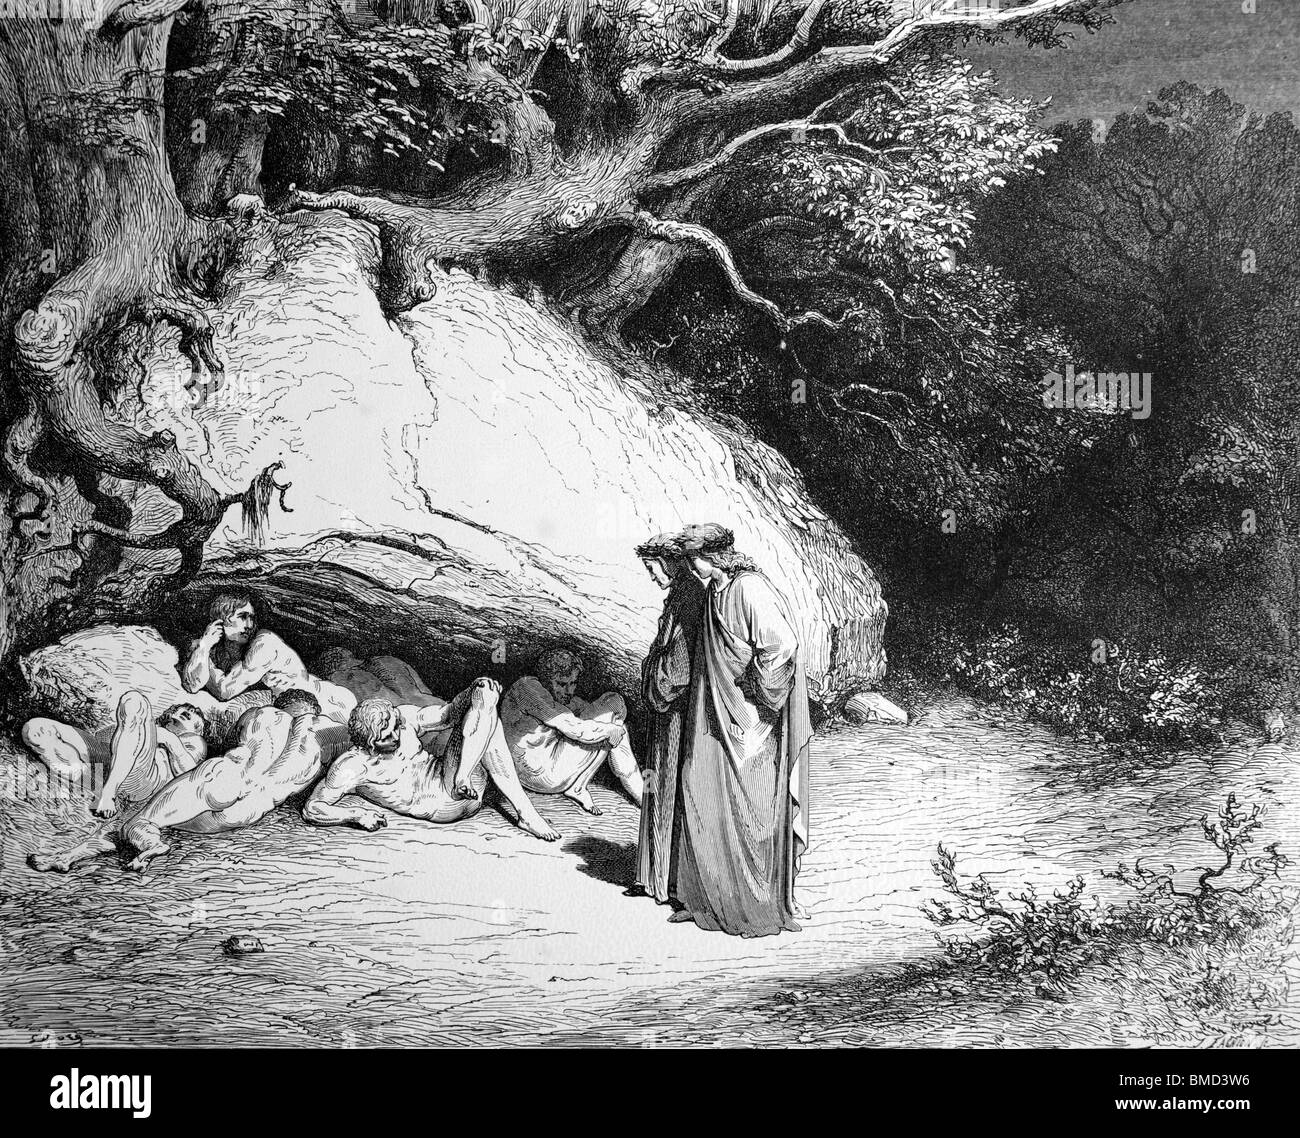 Stich von Gustave Doré aus Alighieris göttliche Komödie "Inferno" oder 'Visionen der Hölle'; Dante und Vergil in der Schwebe Stockfoto